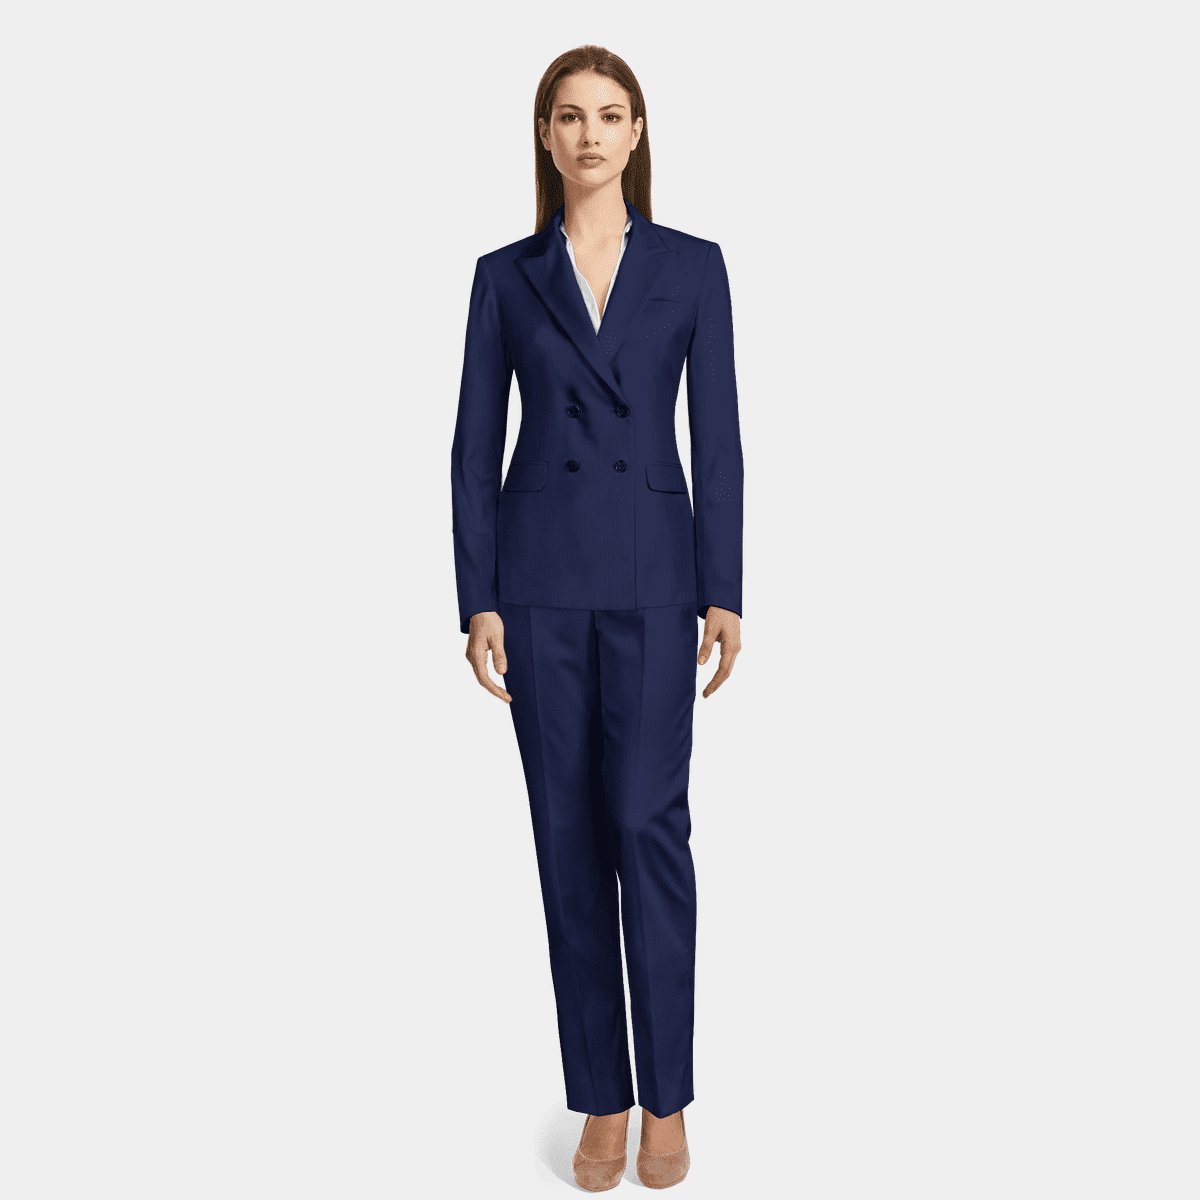 Blauer Damen Anzug aus Polyester-Rayon mit steigendem Revers